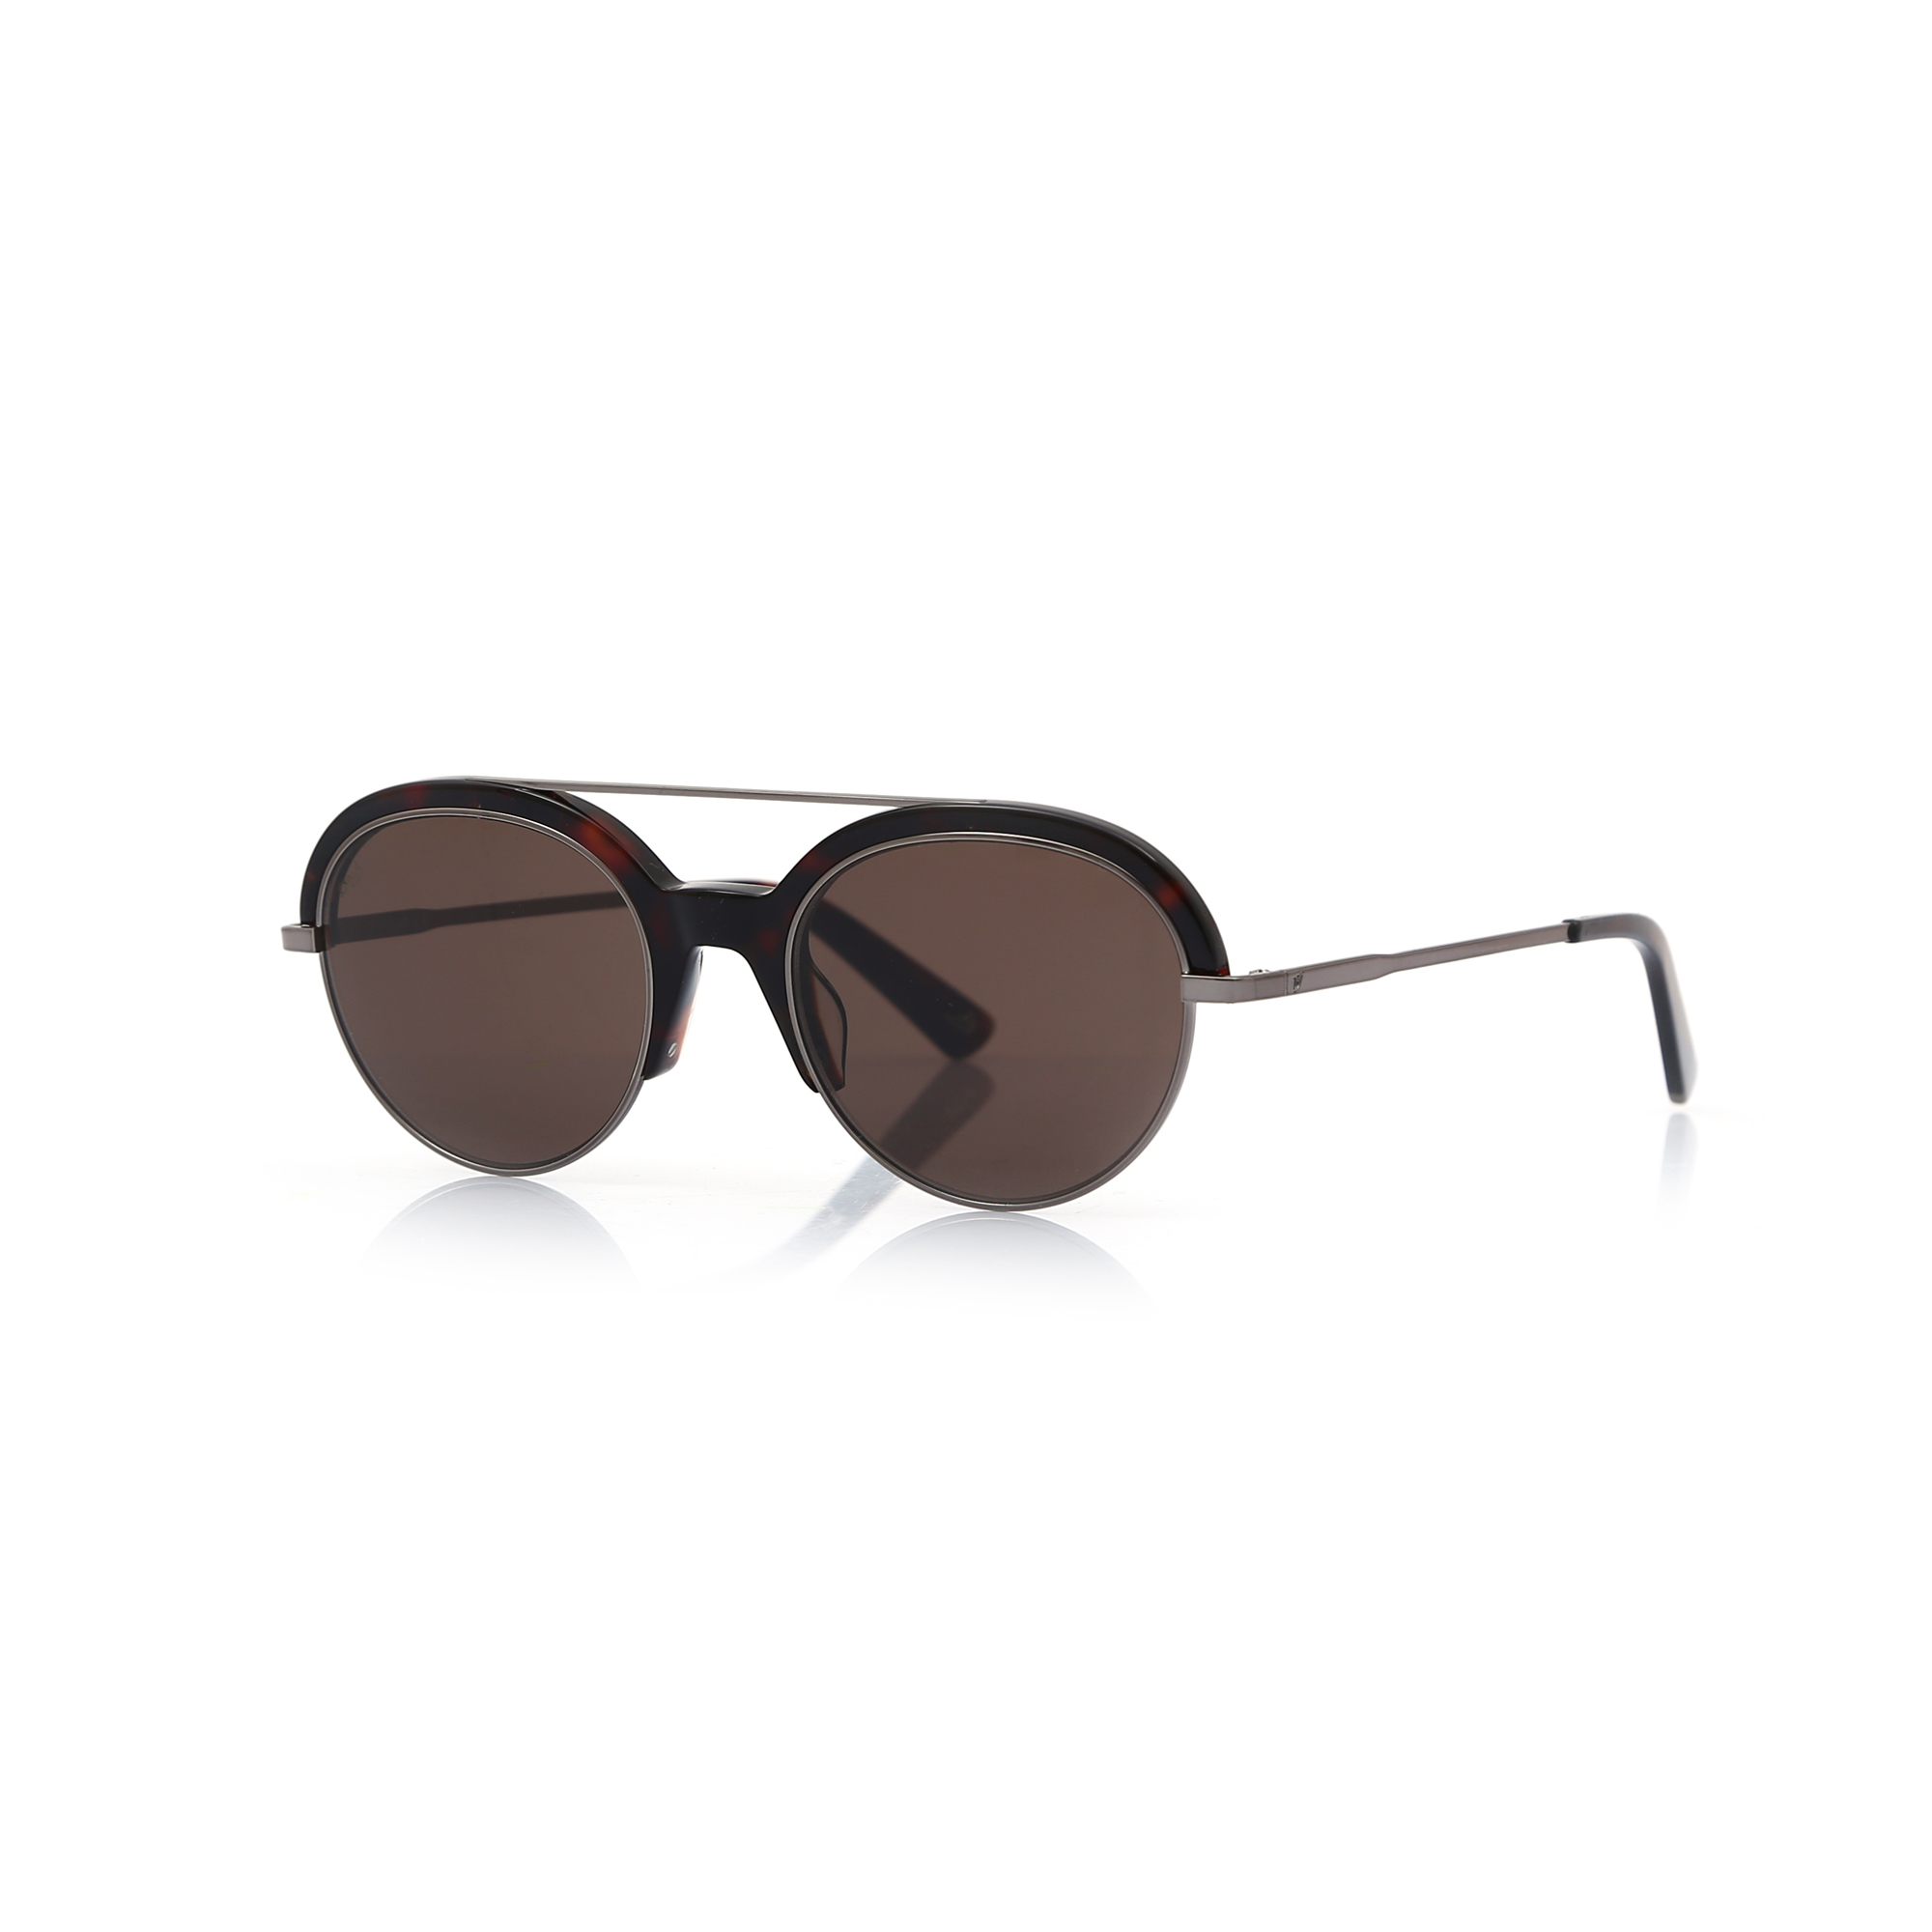 Unisex New Design Sunglasses